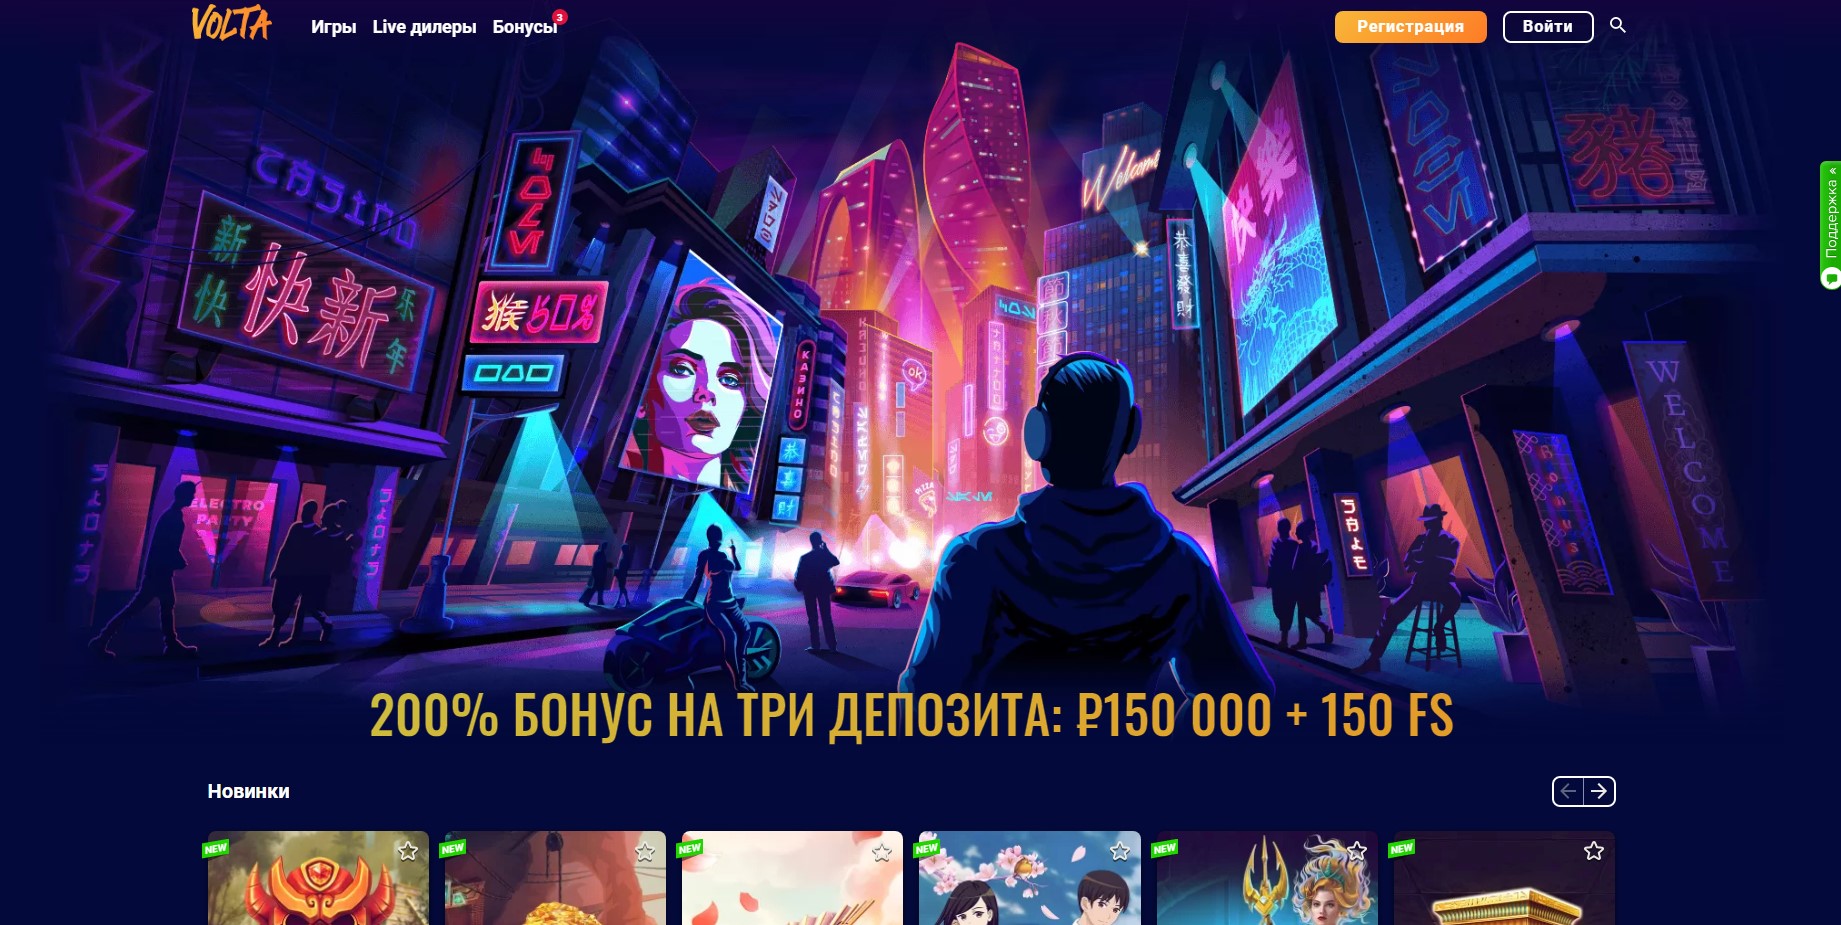 Онлайн-казино Volta_ игровые слоты 24_7 и не только - Opera 2020-07-27 17.50.00.jpg